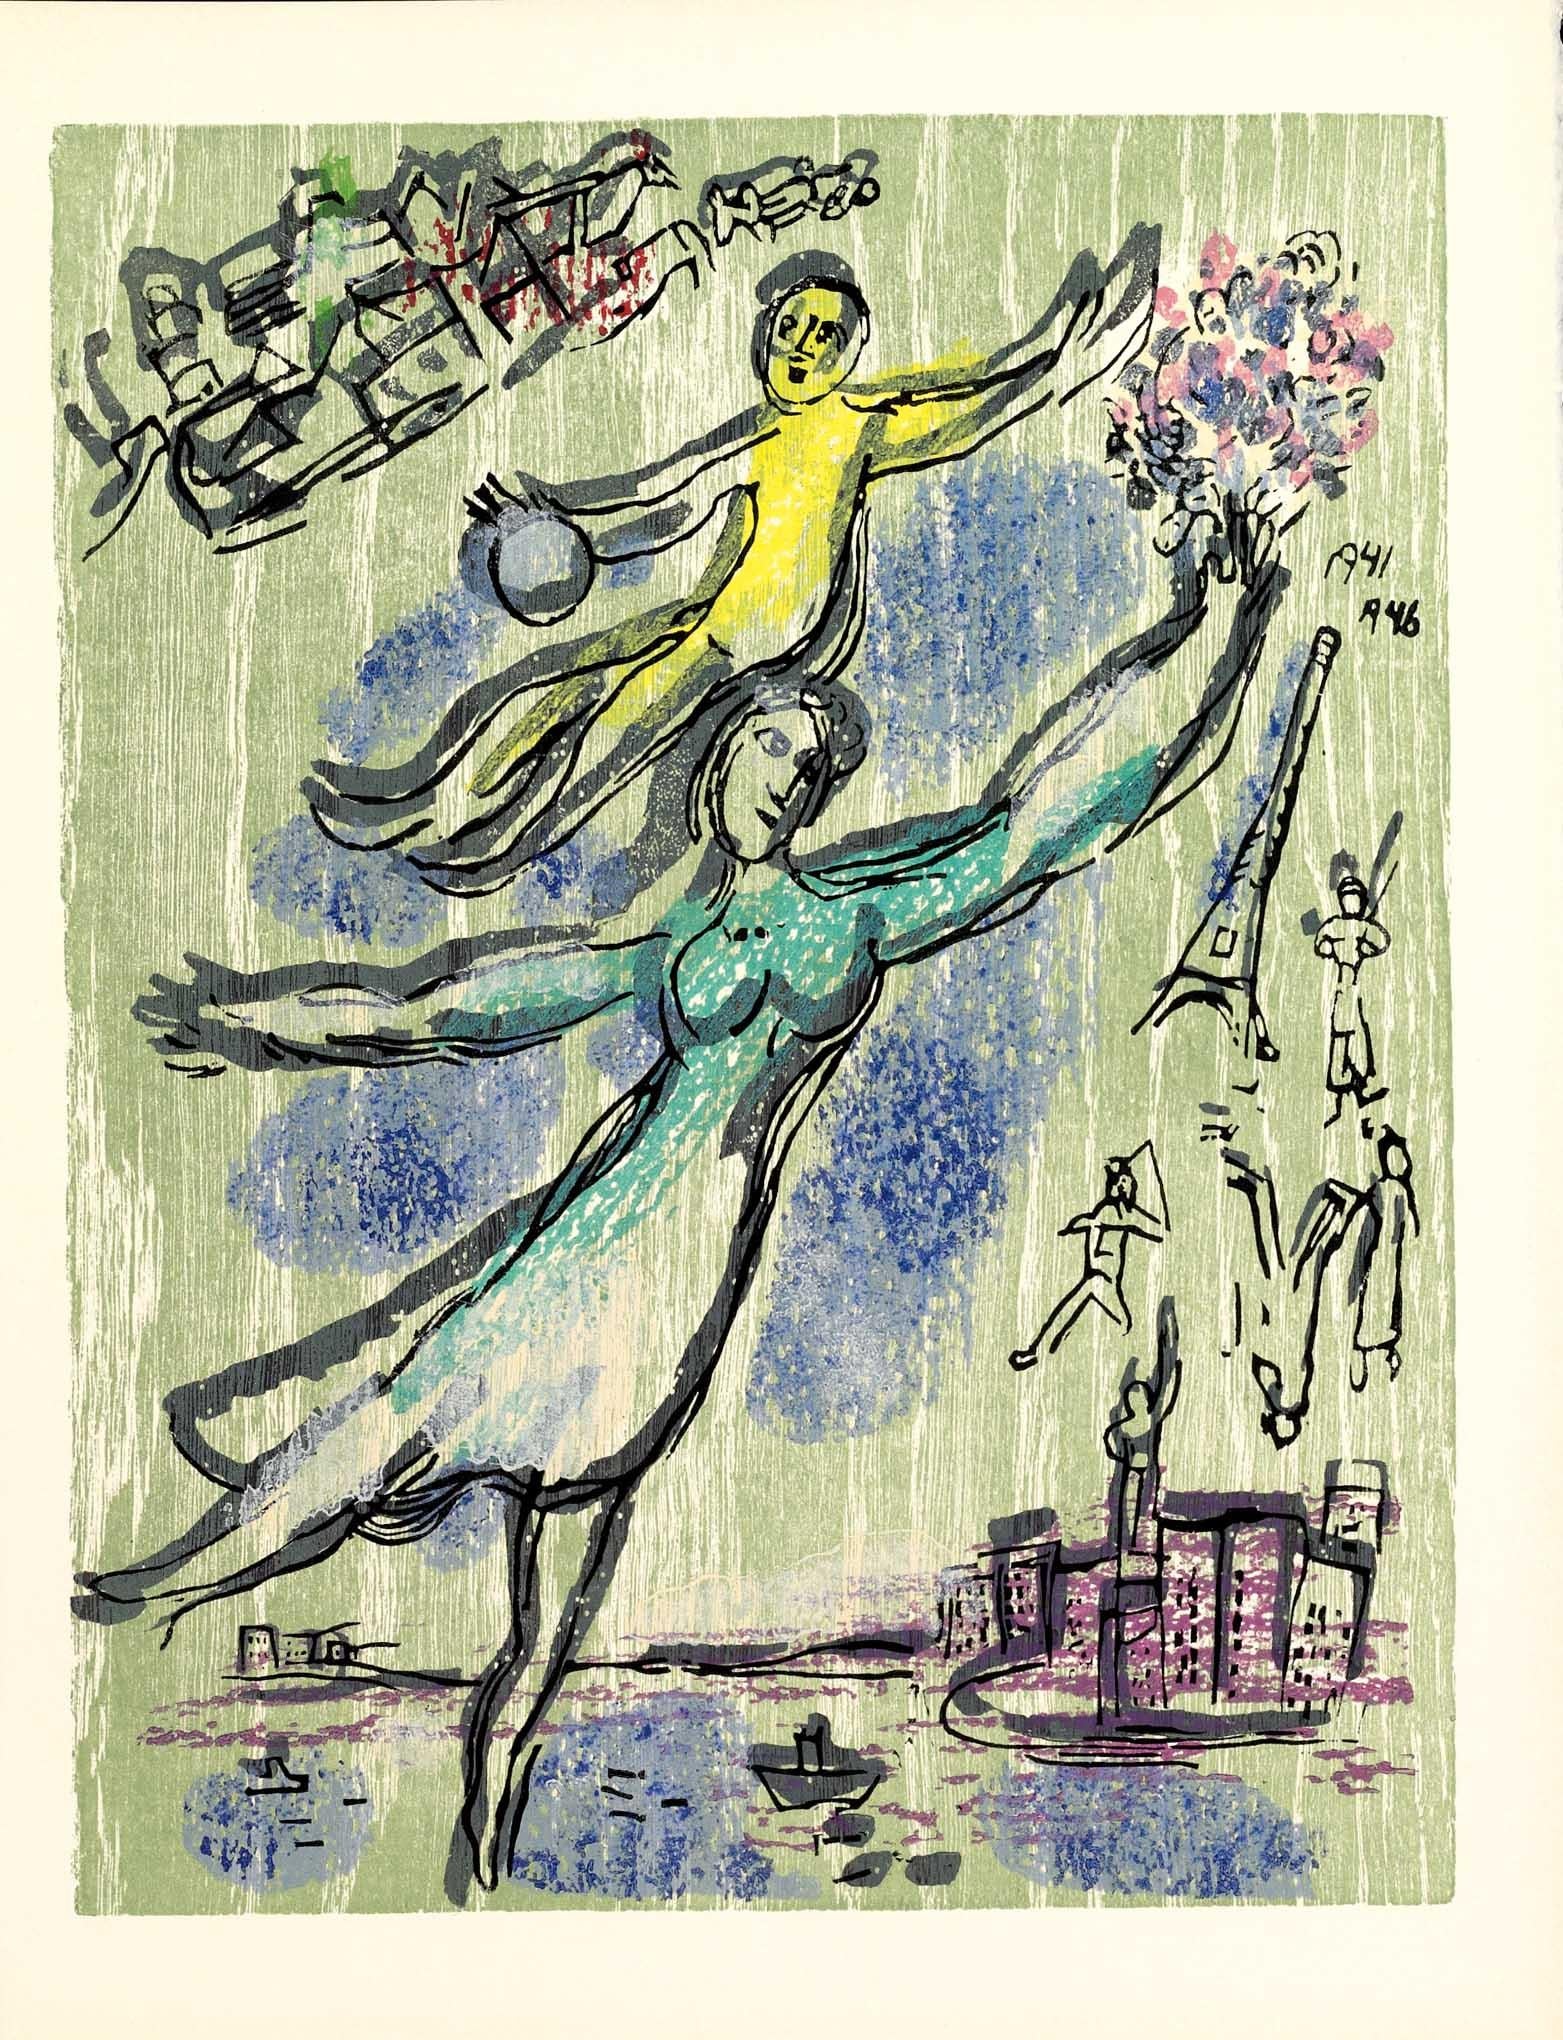 Répit, 1968 (Poèmes, #9) - Print by Marc Chagall